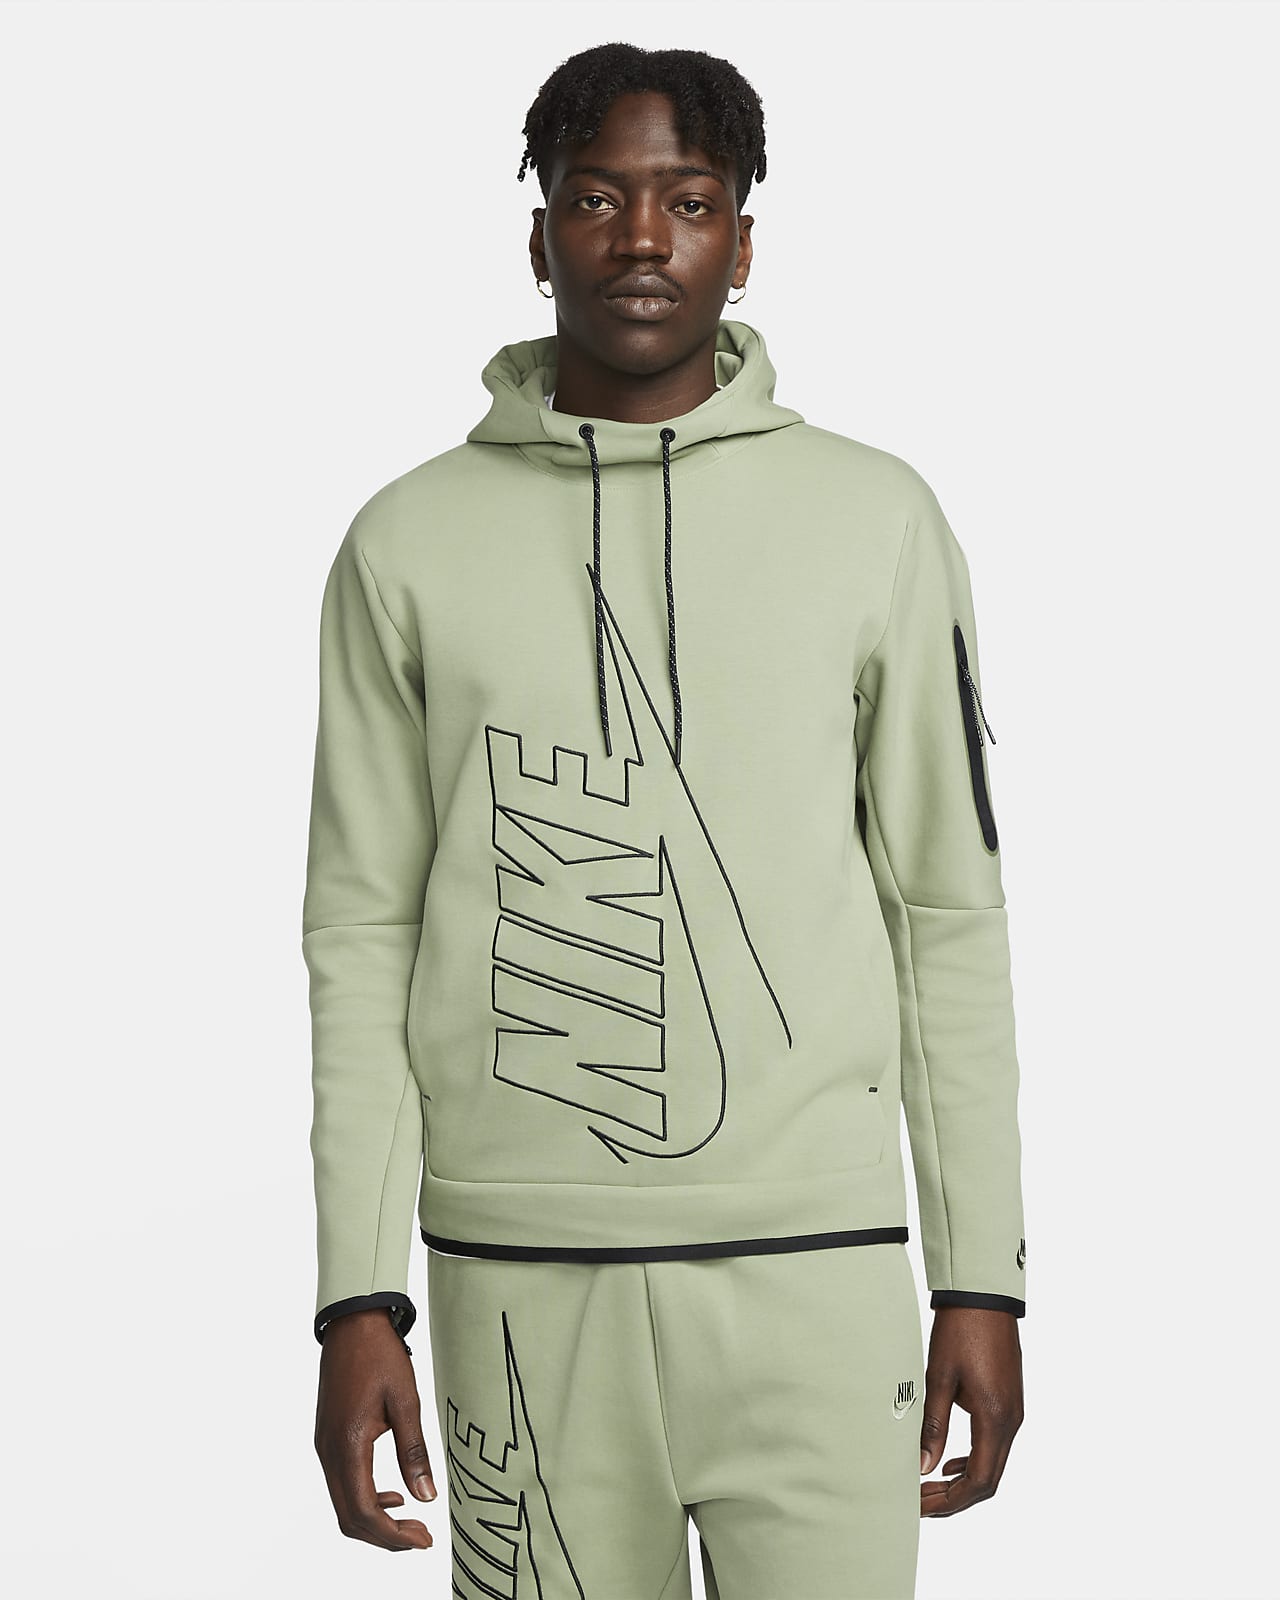 Tech Fleece Men's Pullover Graphic Hoodie. Nike.com